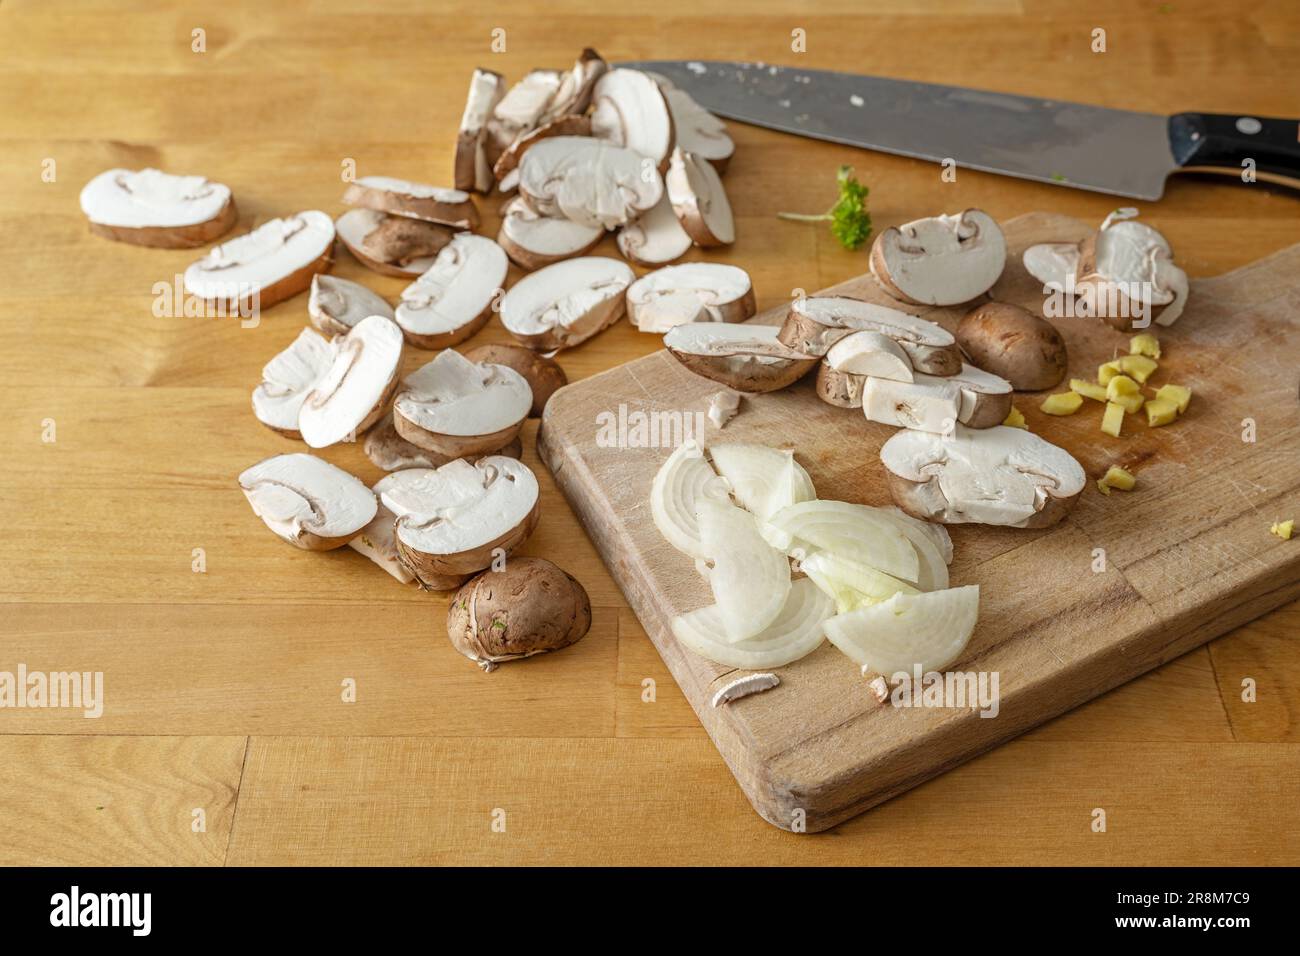 Rodajas de champiñones, cebolla, jengibre picado y un cuchillo de cocina en una tabla de cortar de madera, cocinar un plato vegetariano saludable, espacio de copia, focu seleccionado Foto de stock